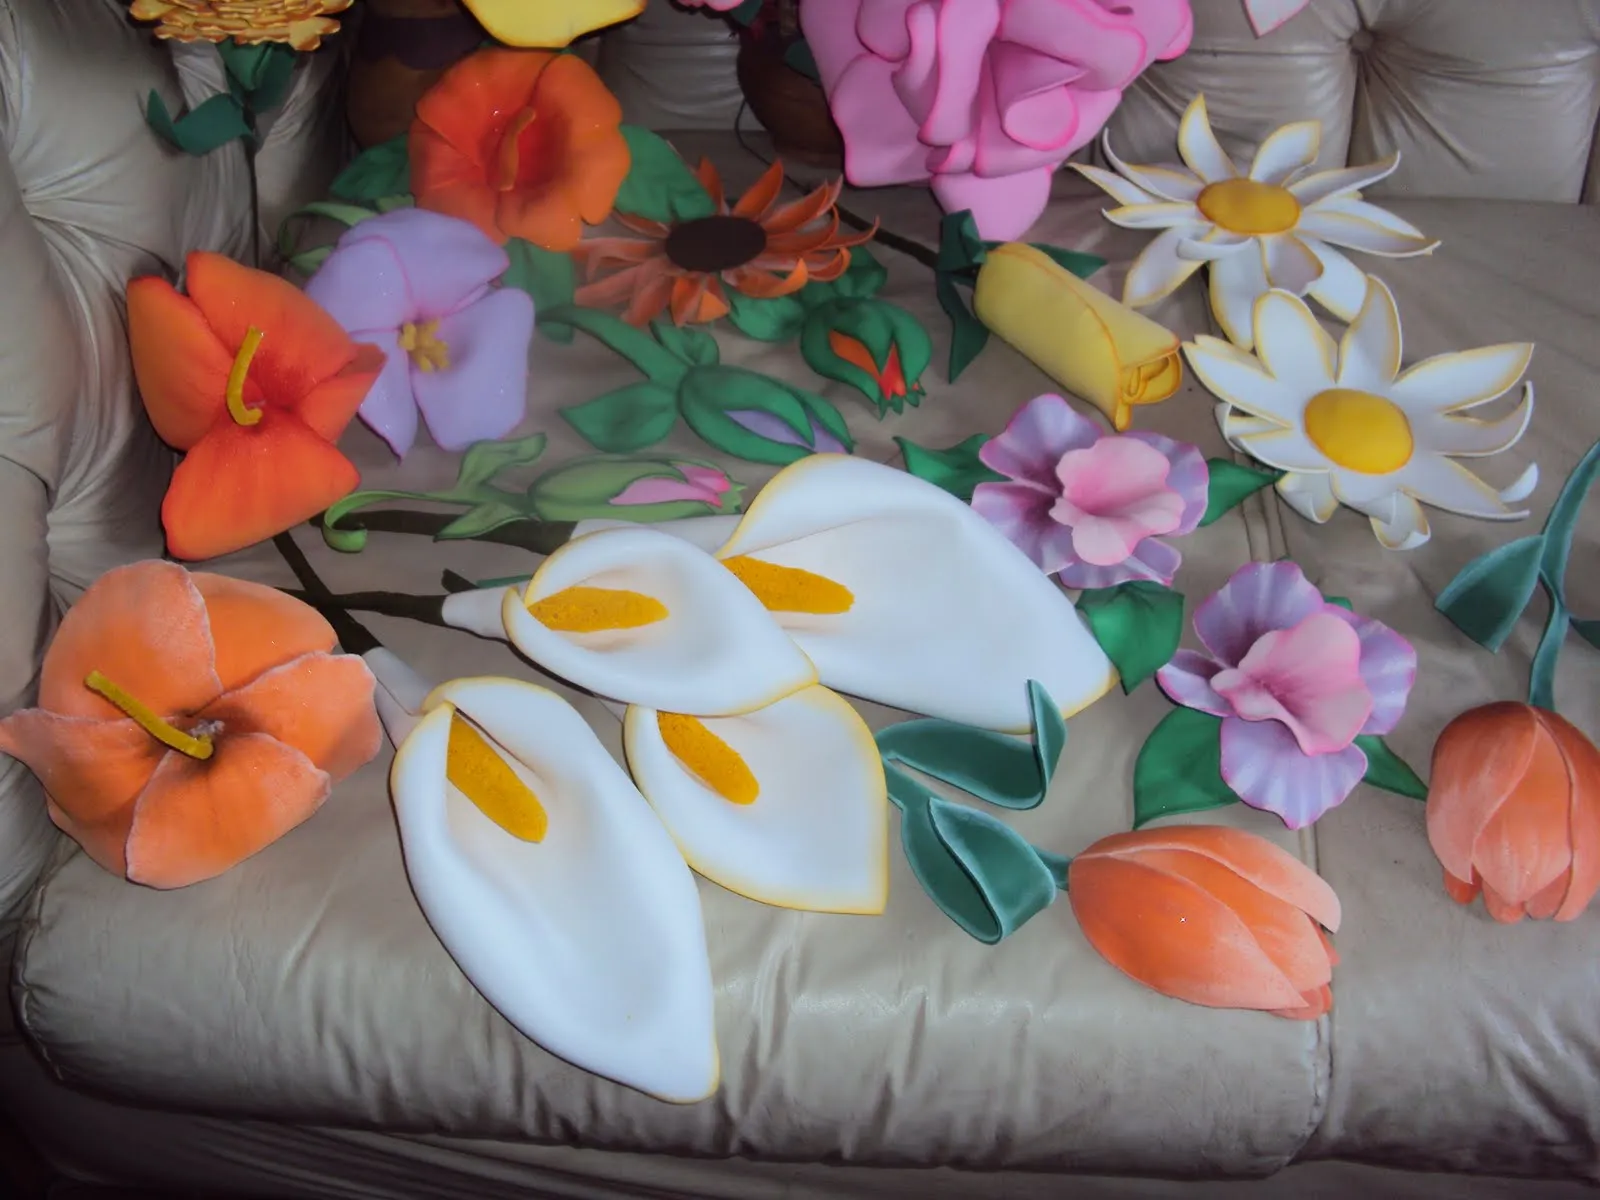 Esta es una parte de las flores hechas en Foami, todavia hay muchas ...